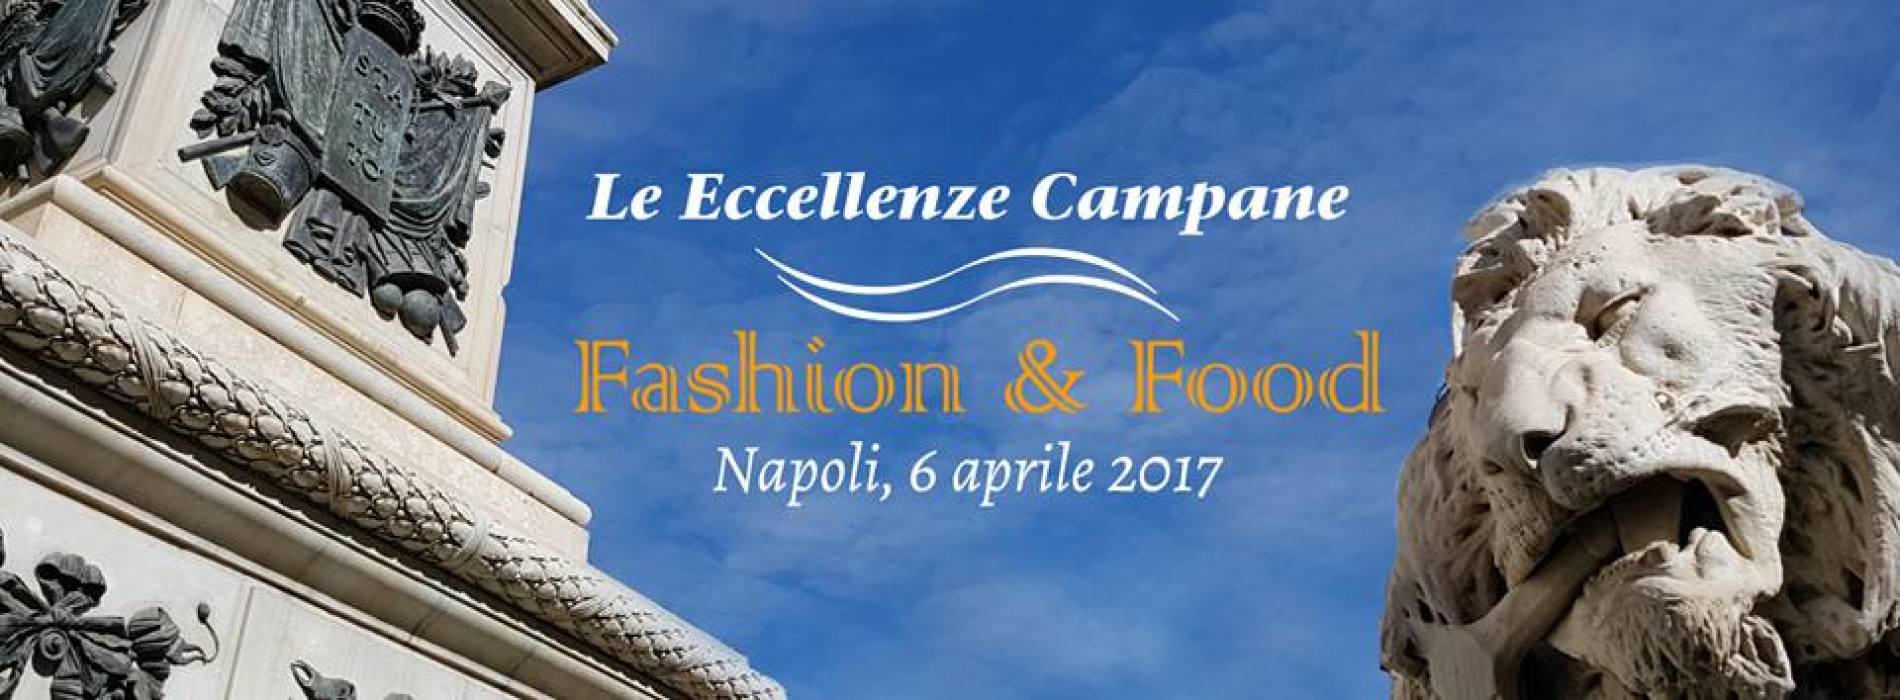 Napoli capitale fashion & food, protagonista il brand Kilesa